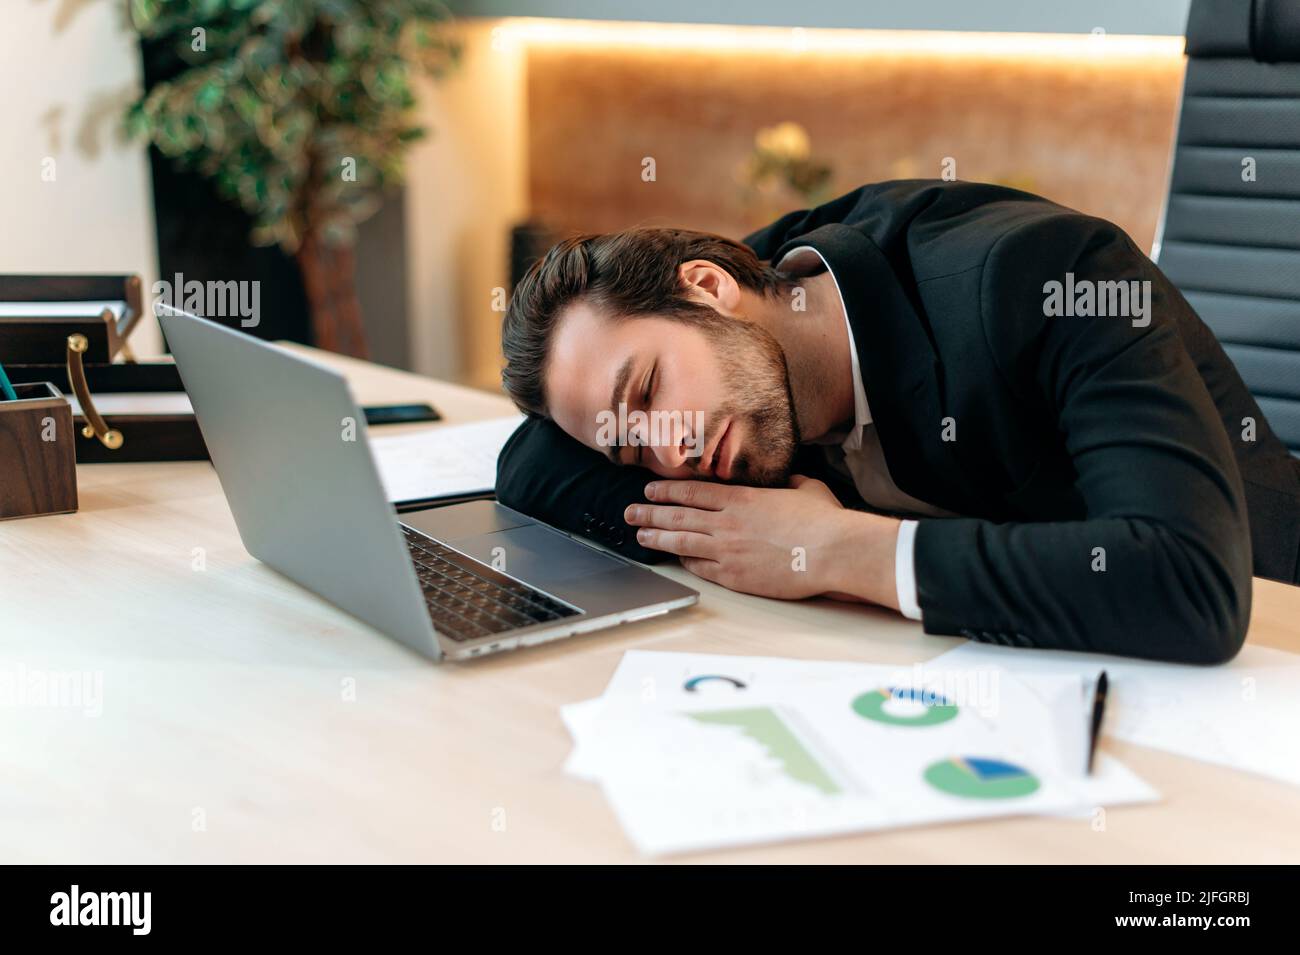 Exténué homme d'affaires caucasien fatigué, pdg, directeur d'entreprise, dans un costume formel, dormant sur le lieu de travail après une dure journée de travail, employé de bureau a besoin de repos, souffre de fatigue chronique et manque de sommeil Banque D'Images